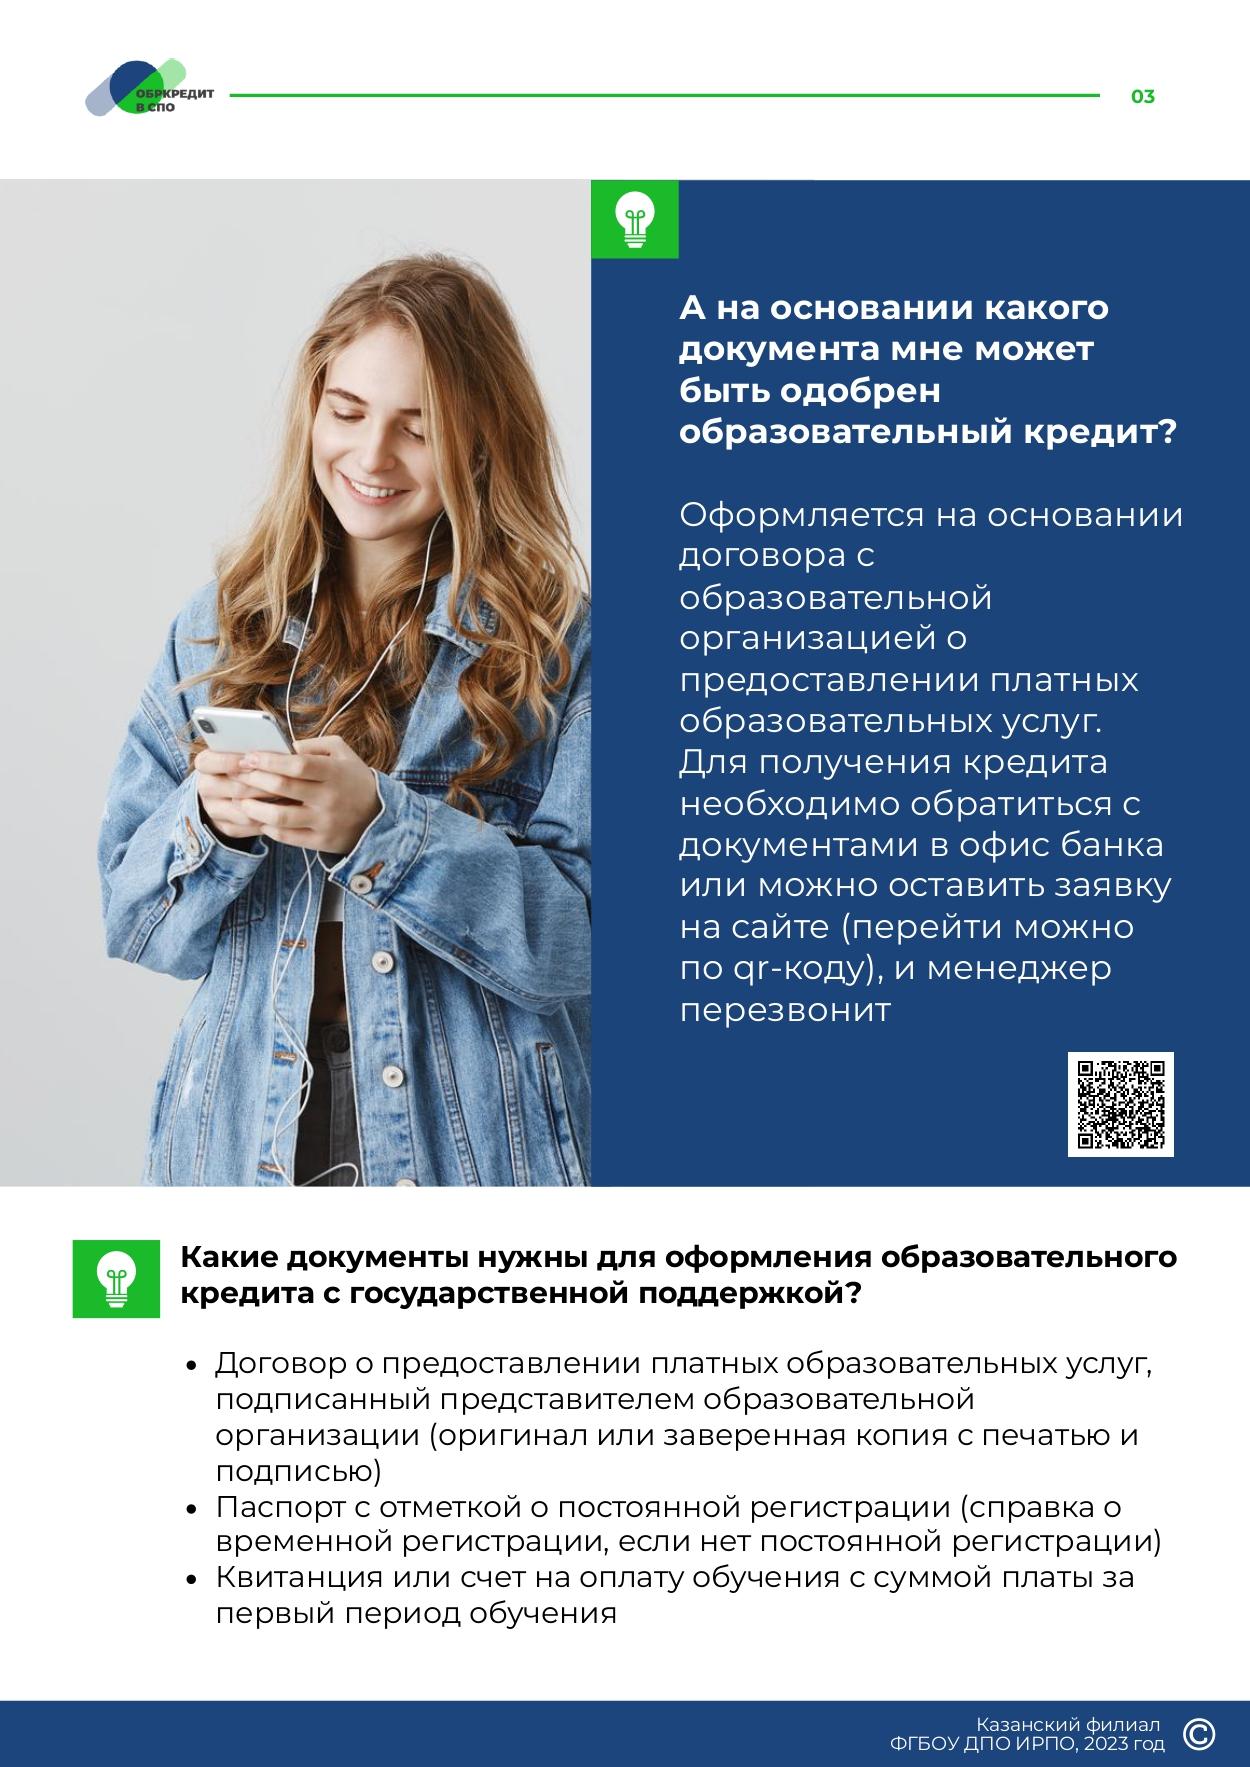 Obrazovatelnoe_kreditovanie_posobie_dlya_studentov_SPO_page-0003